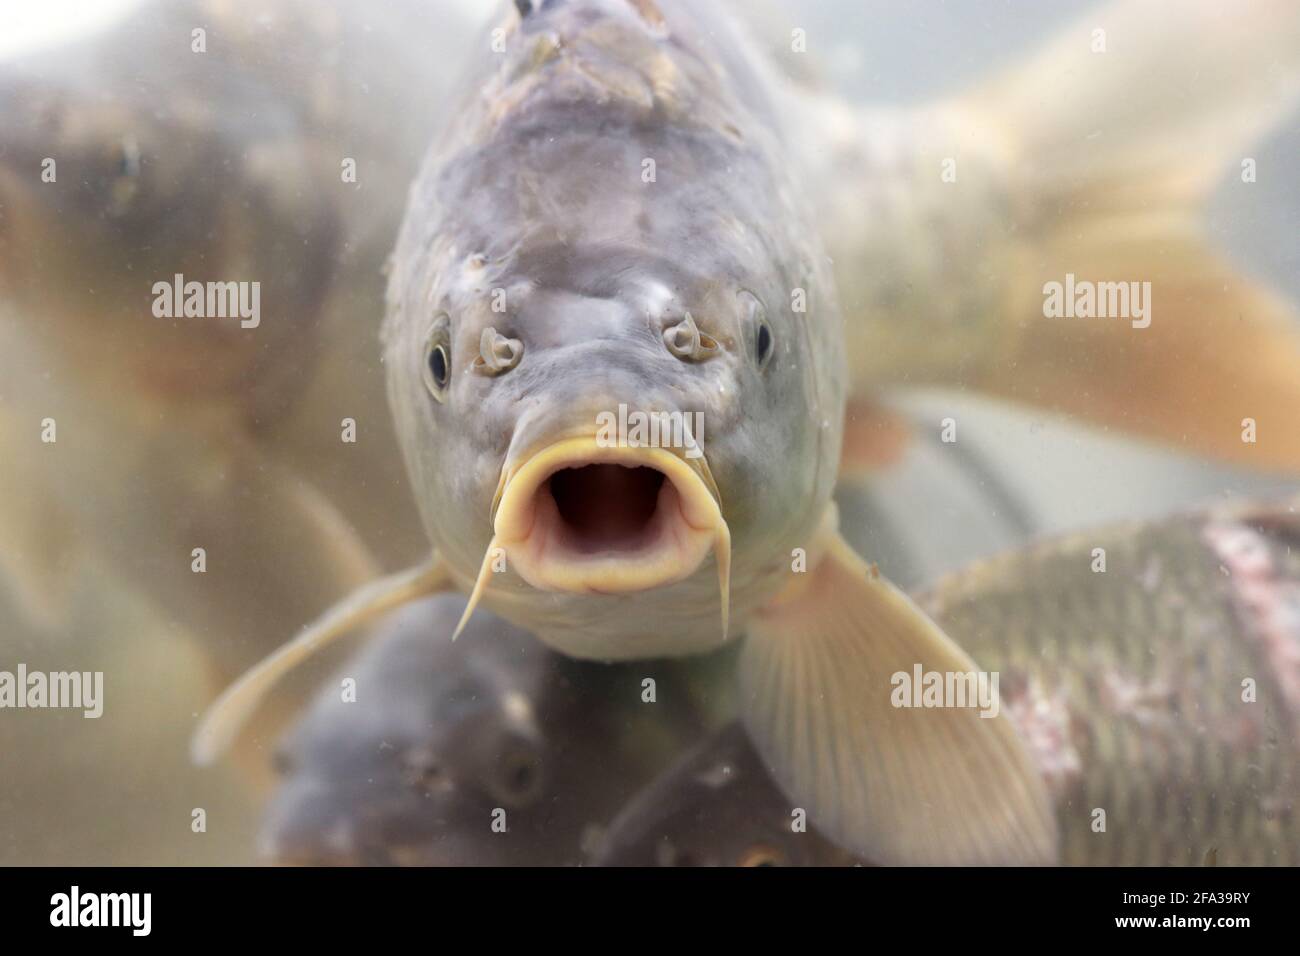 Karpfen schwimmt im Wasser mit offenem Mund. Fischschar, Süßwasserkarpfen im Ladenaquarium Stockfoto